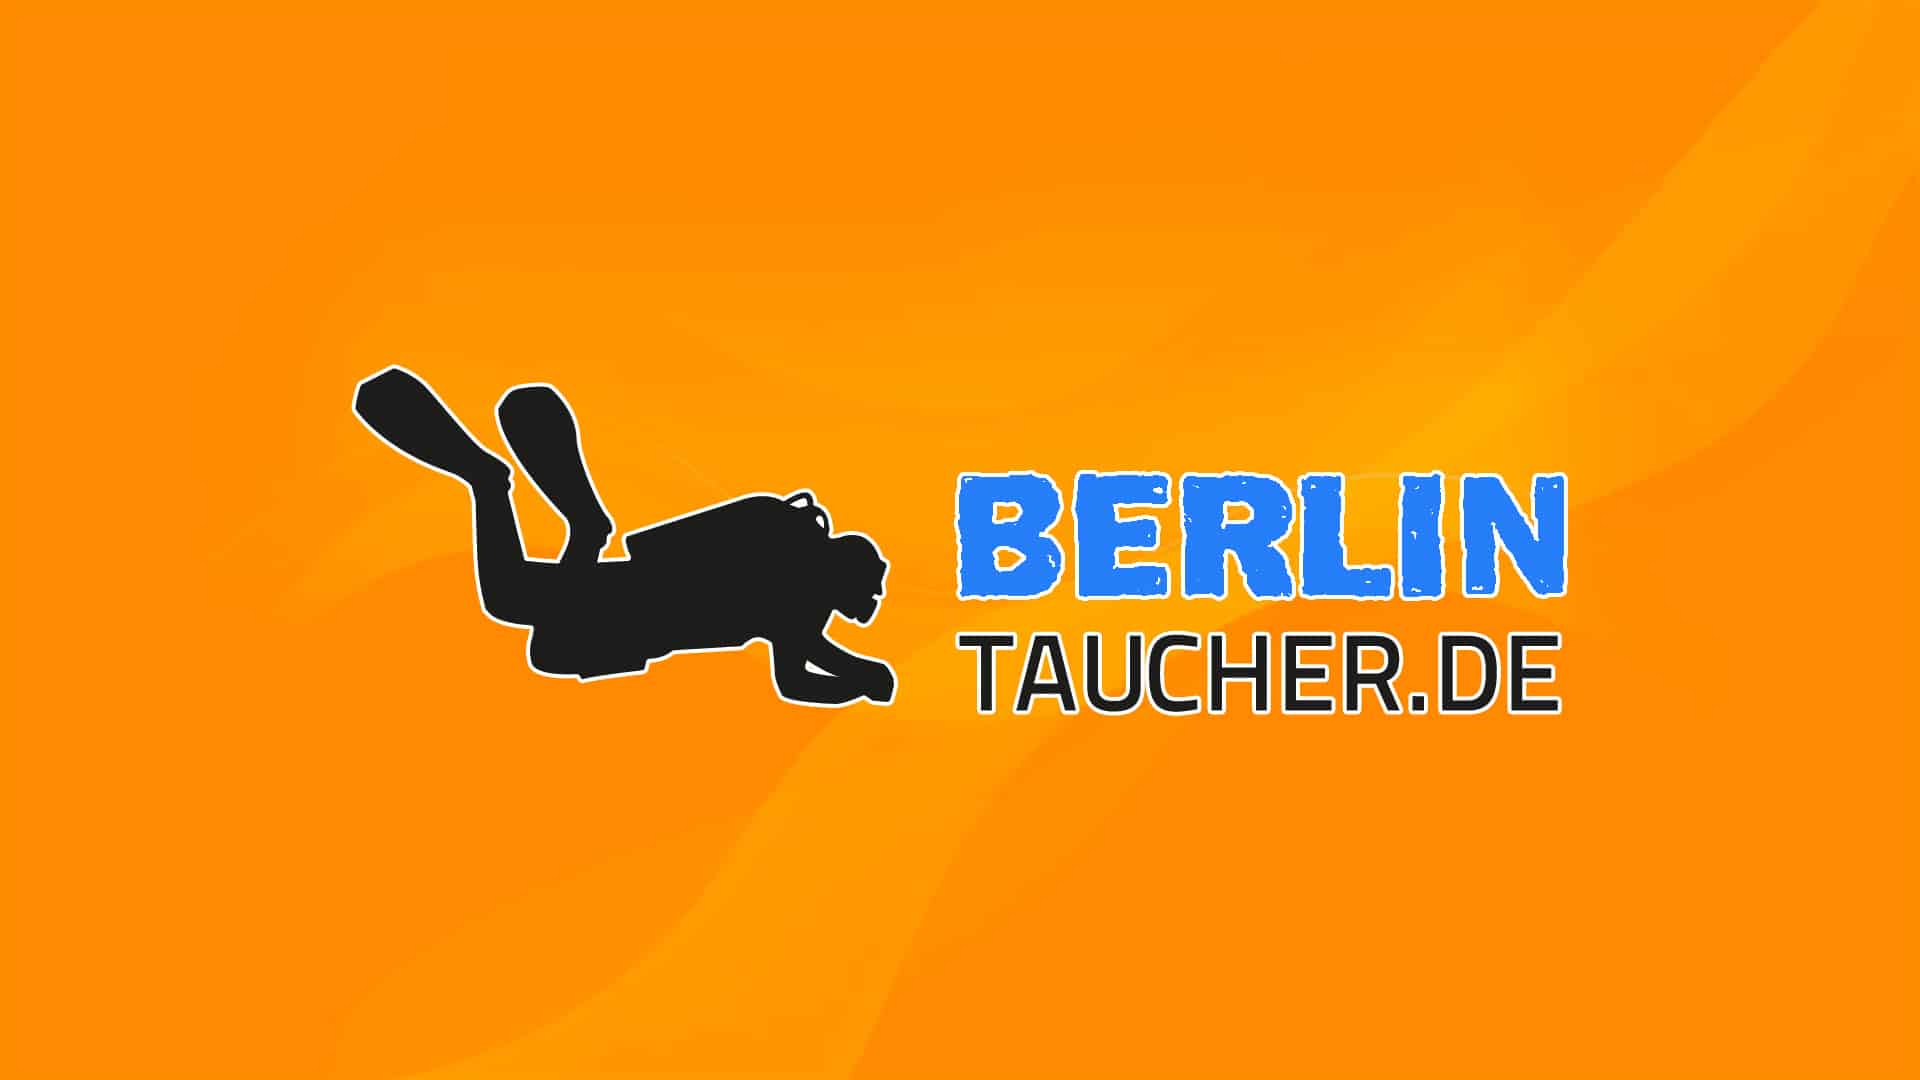 BerlinTaucher.de